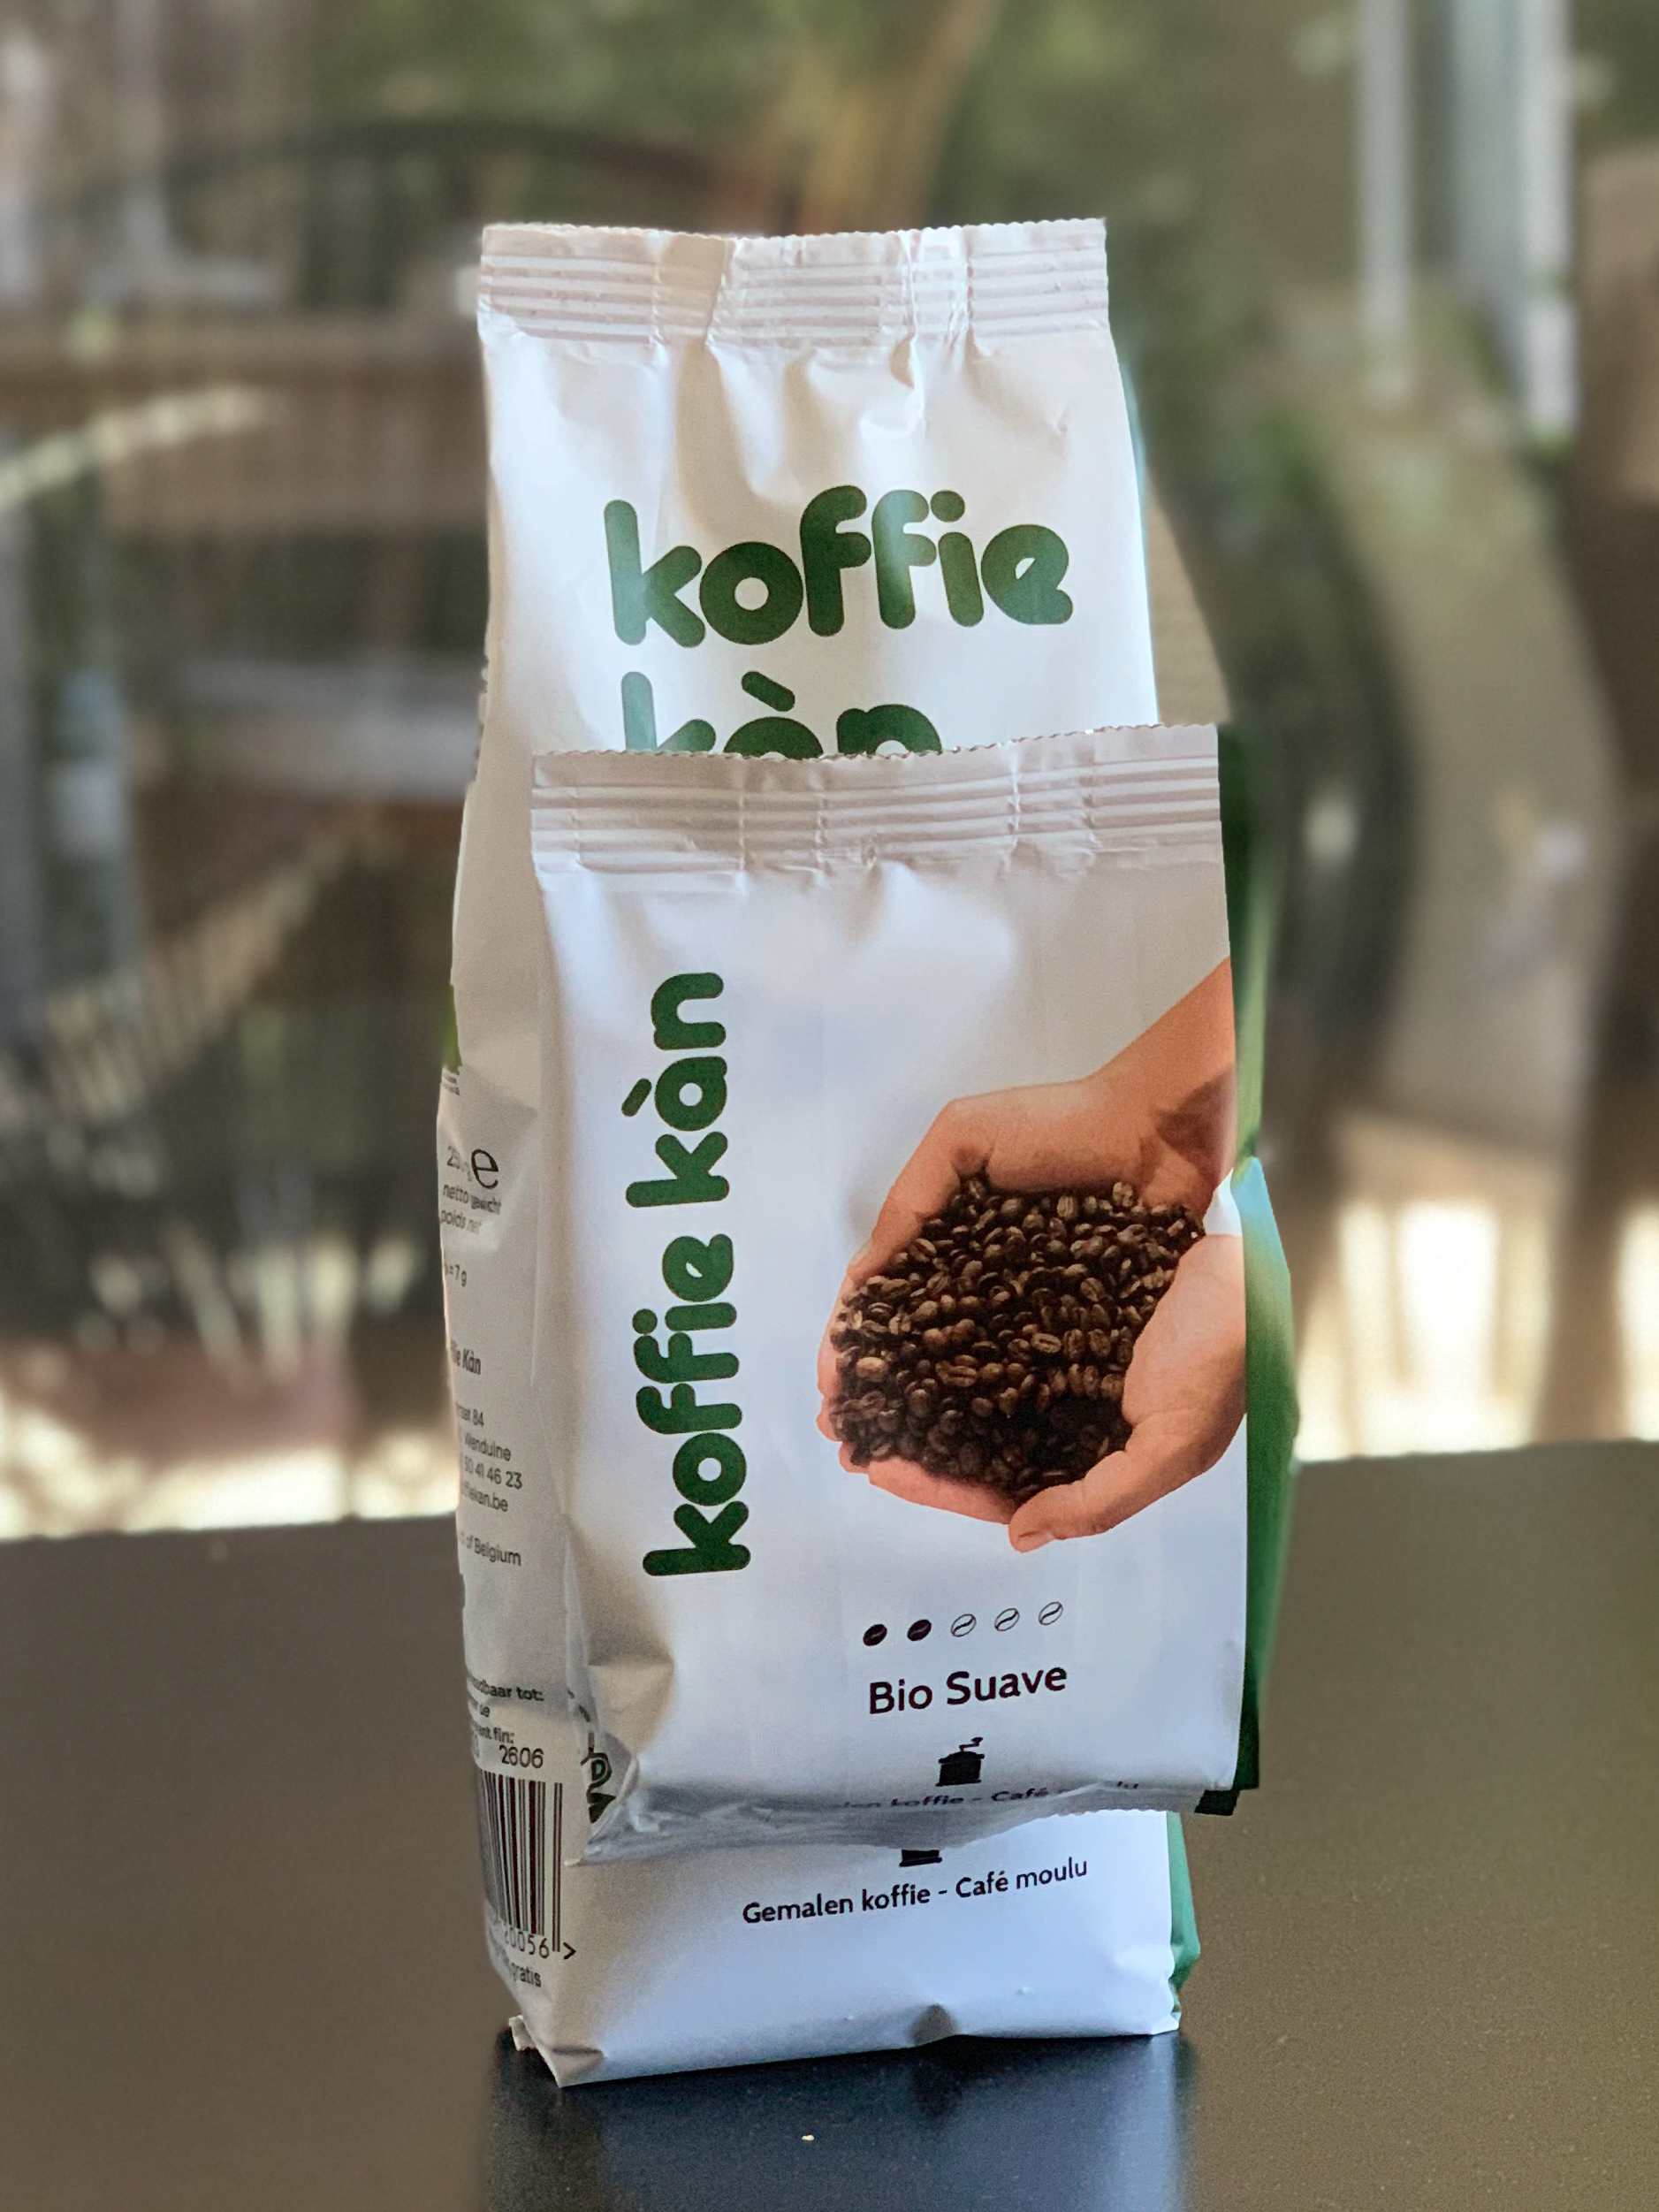 PROMO Koffie Kàn Gemalen bio 250g + 50g bio suave gemalen gratis